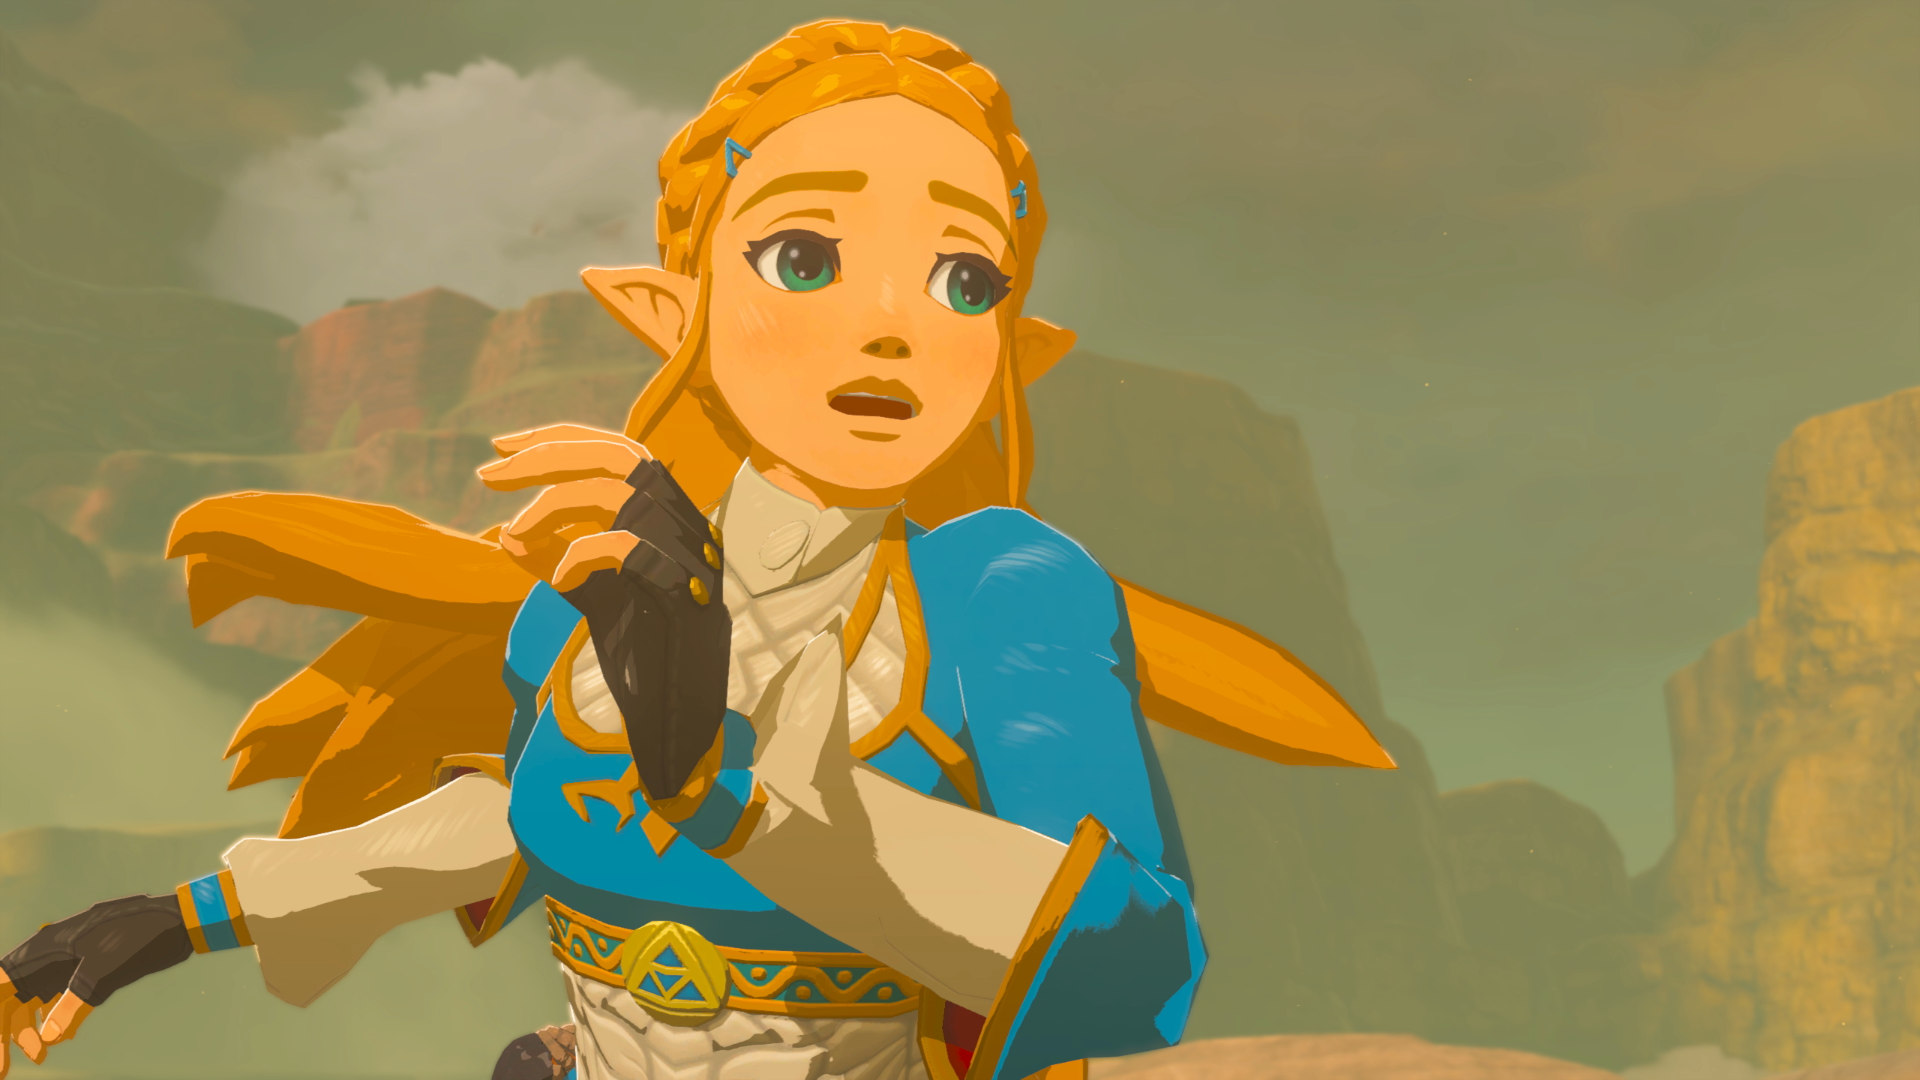 Zelda looking scared in The Legend of Zelda: Breath of the Wild